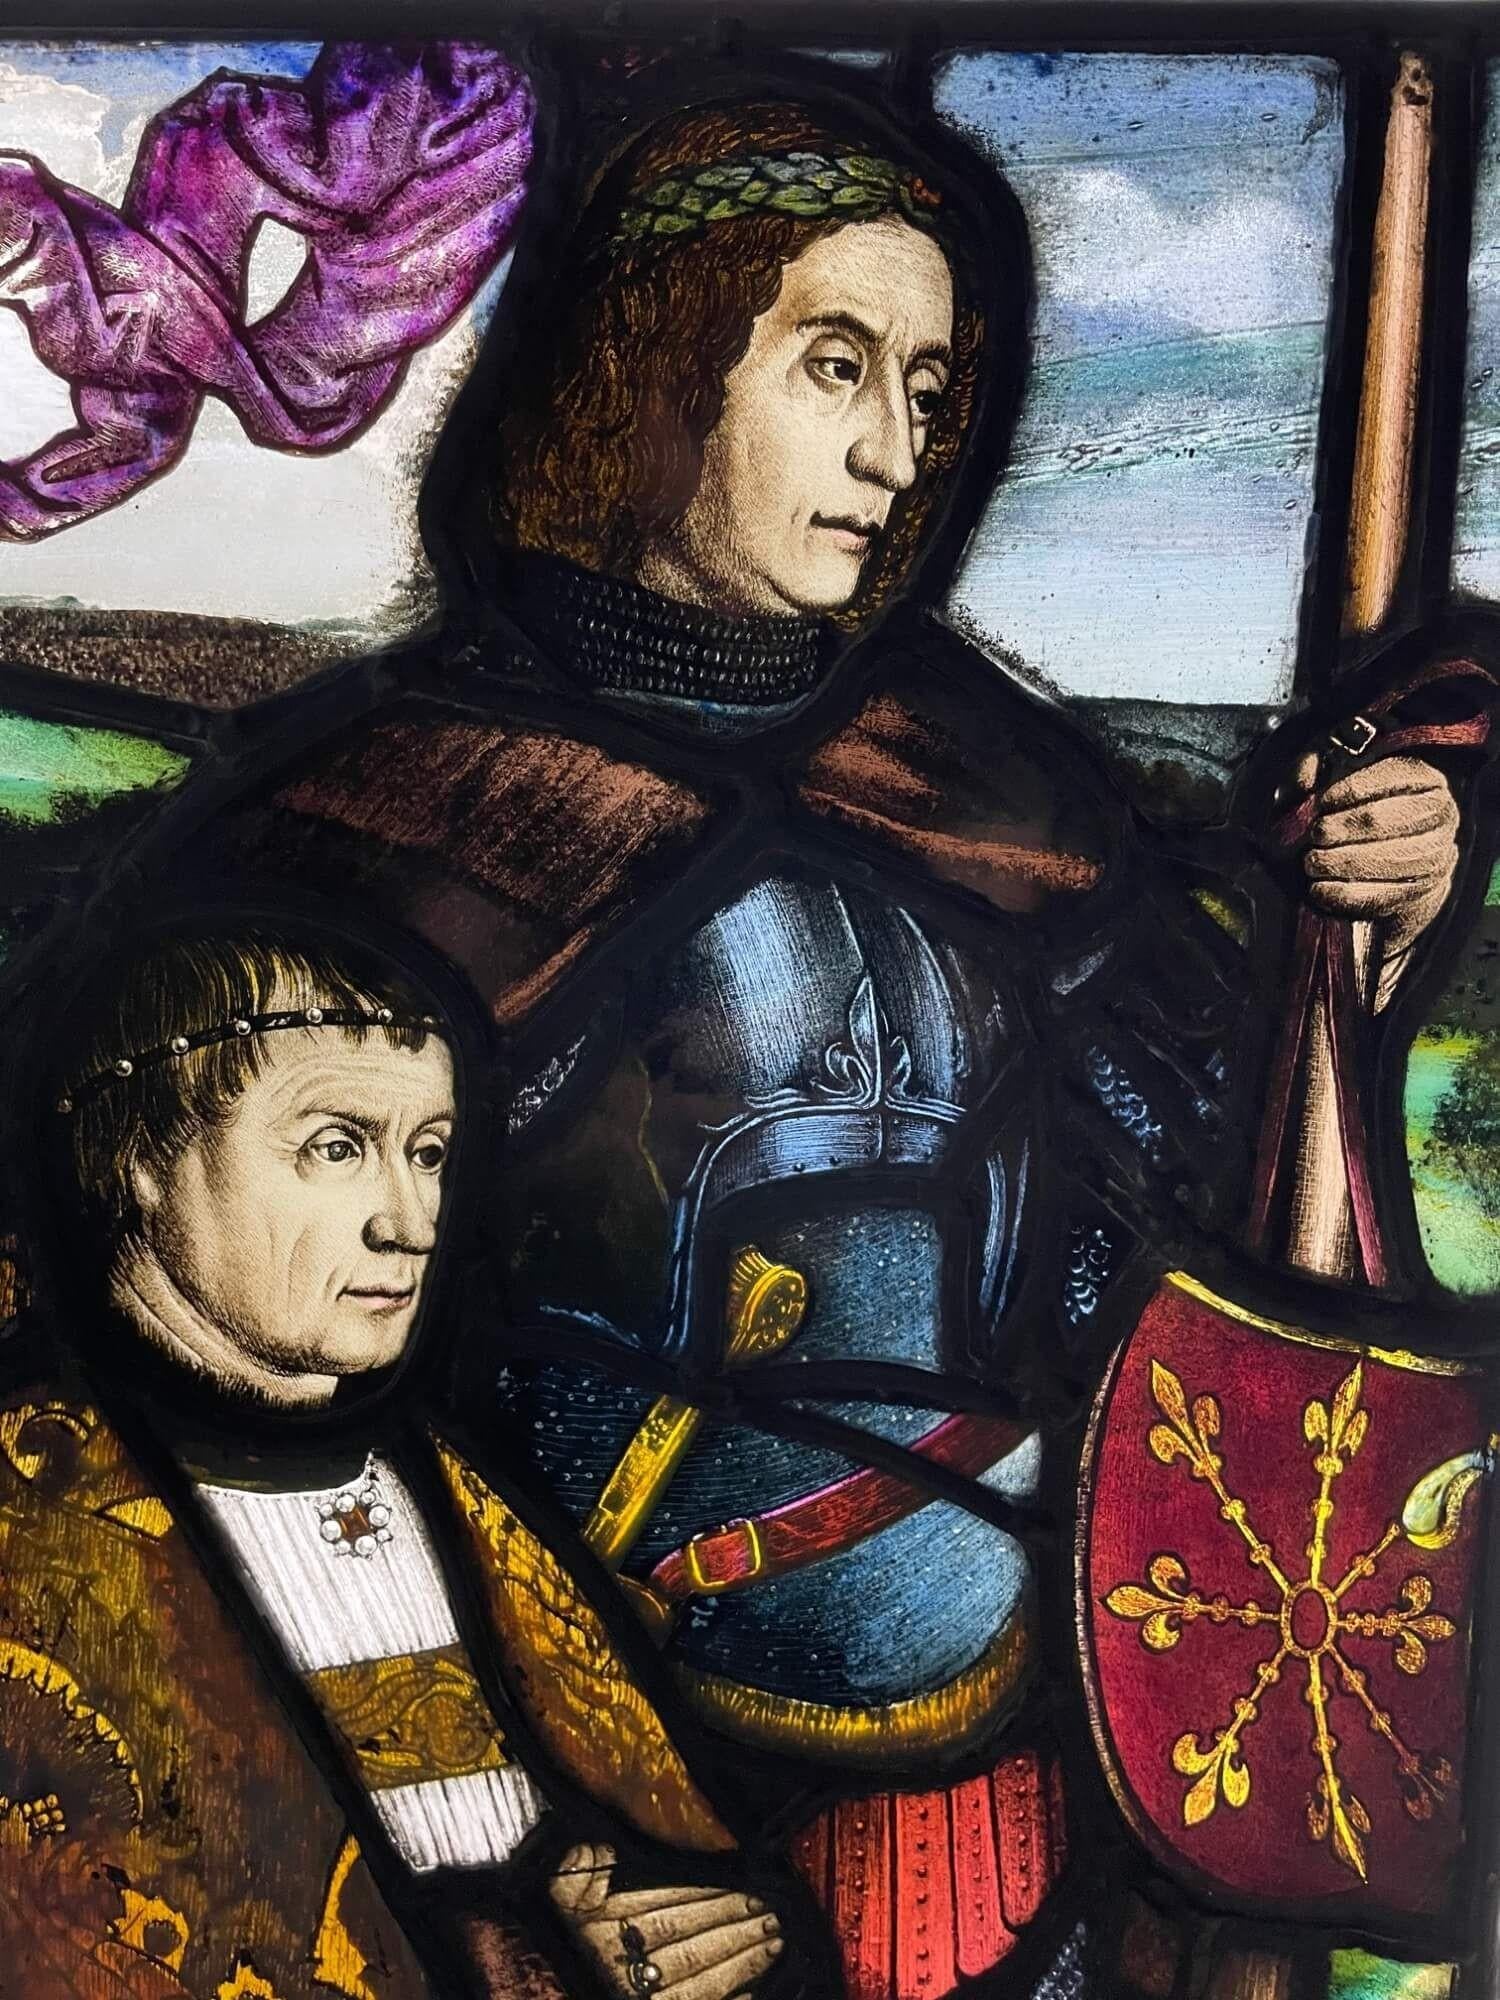 Une ancienne fenêtre en verre au plomb de style médiéval anglais vers 1850 dans le style néo-Tudor représentant un chevalier en armure tenant une bannière à côté d'un prêtre comme s'il se tenait à l'orée d'une grande bataille. Les couleurs vives et